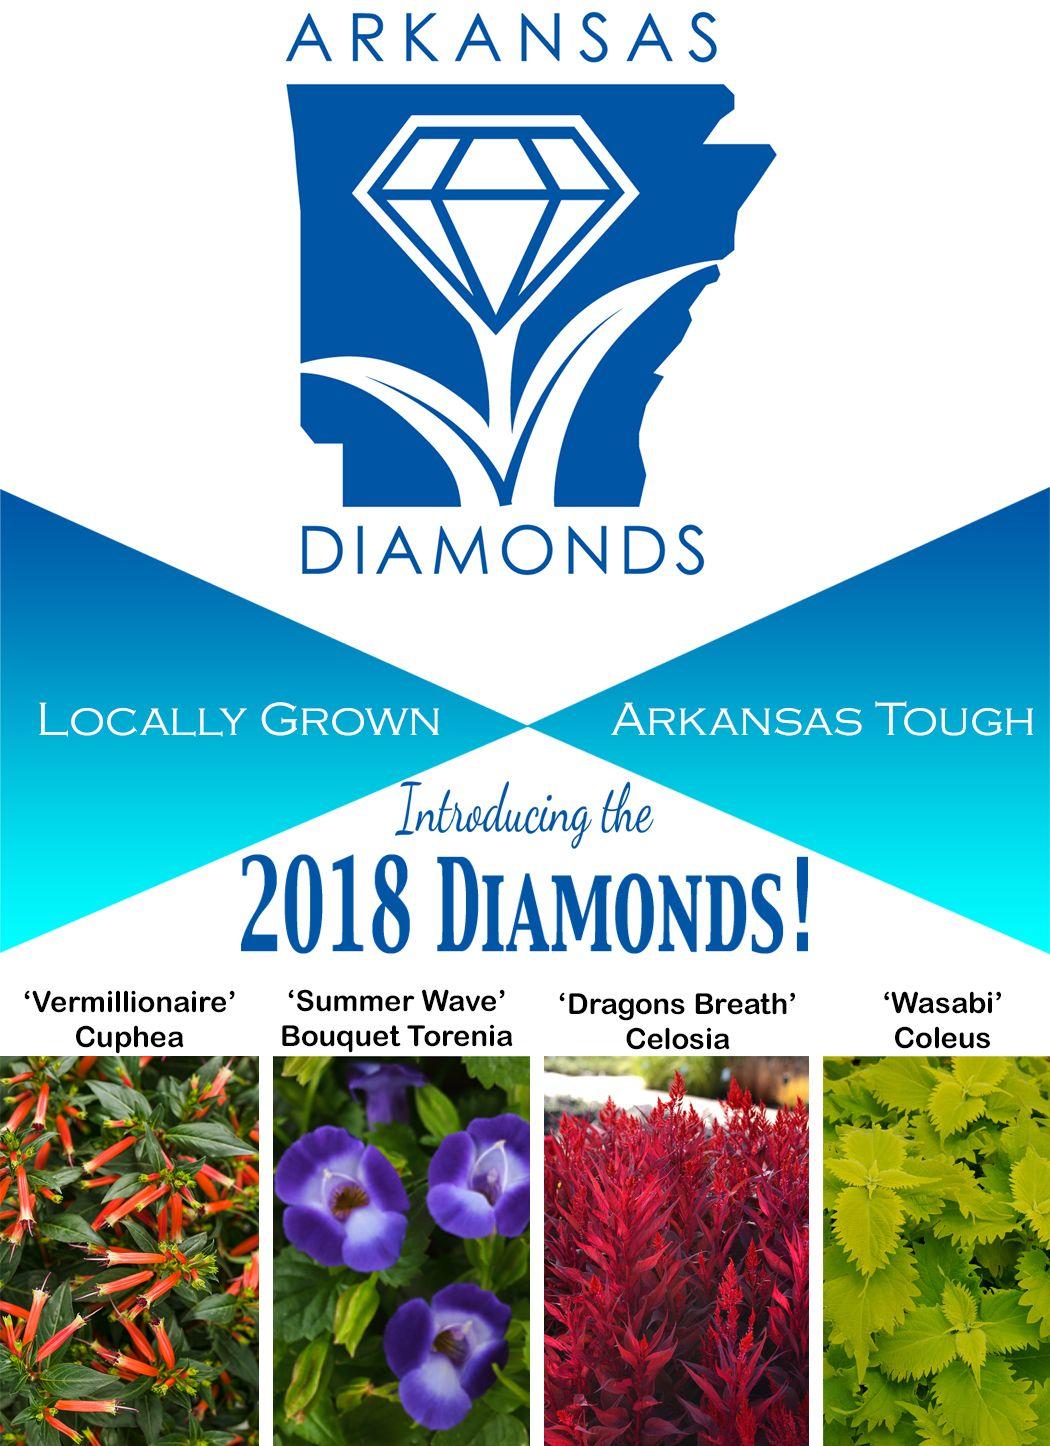 Arkansas Diamond Logo - Arkansas Diamonds Green Industry Association